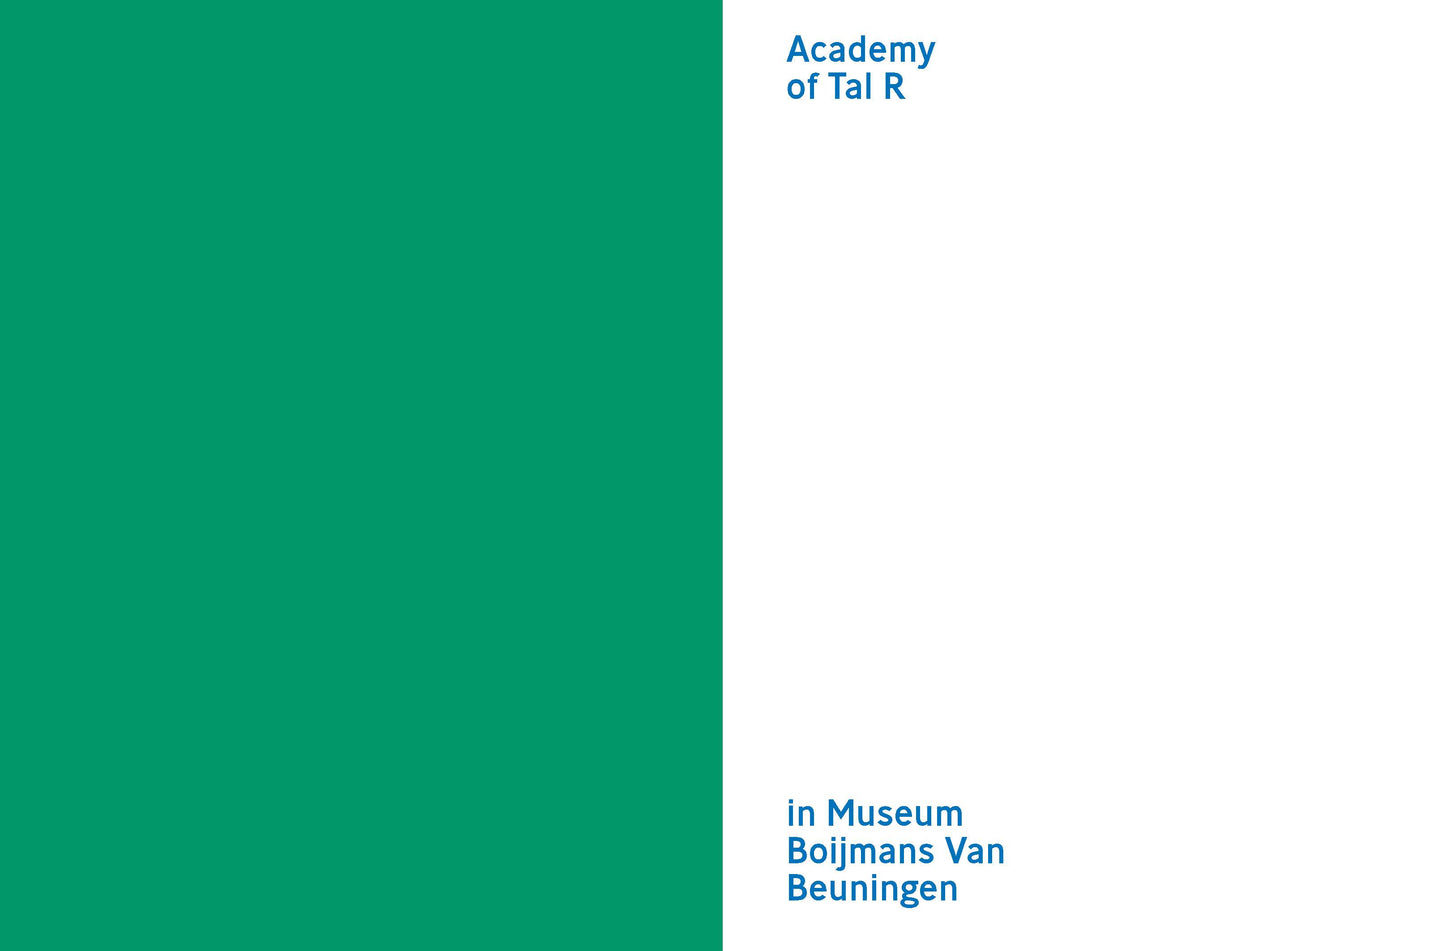 Academy of Tal R in Museum Boijmans Van Beuningen